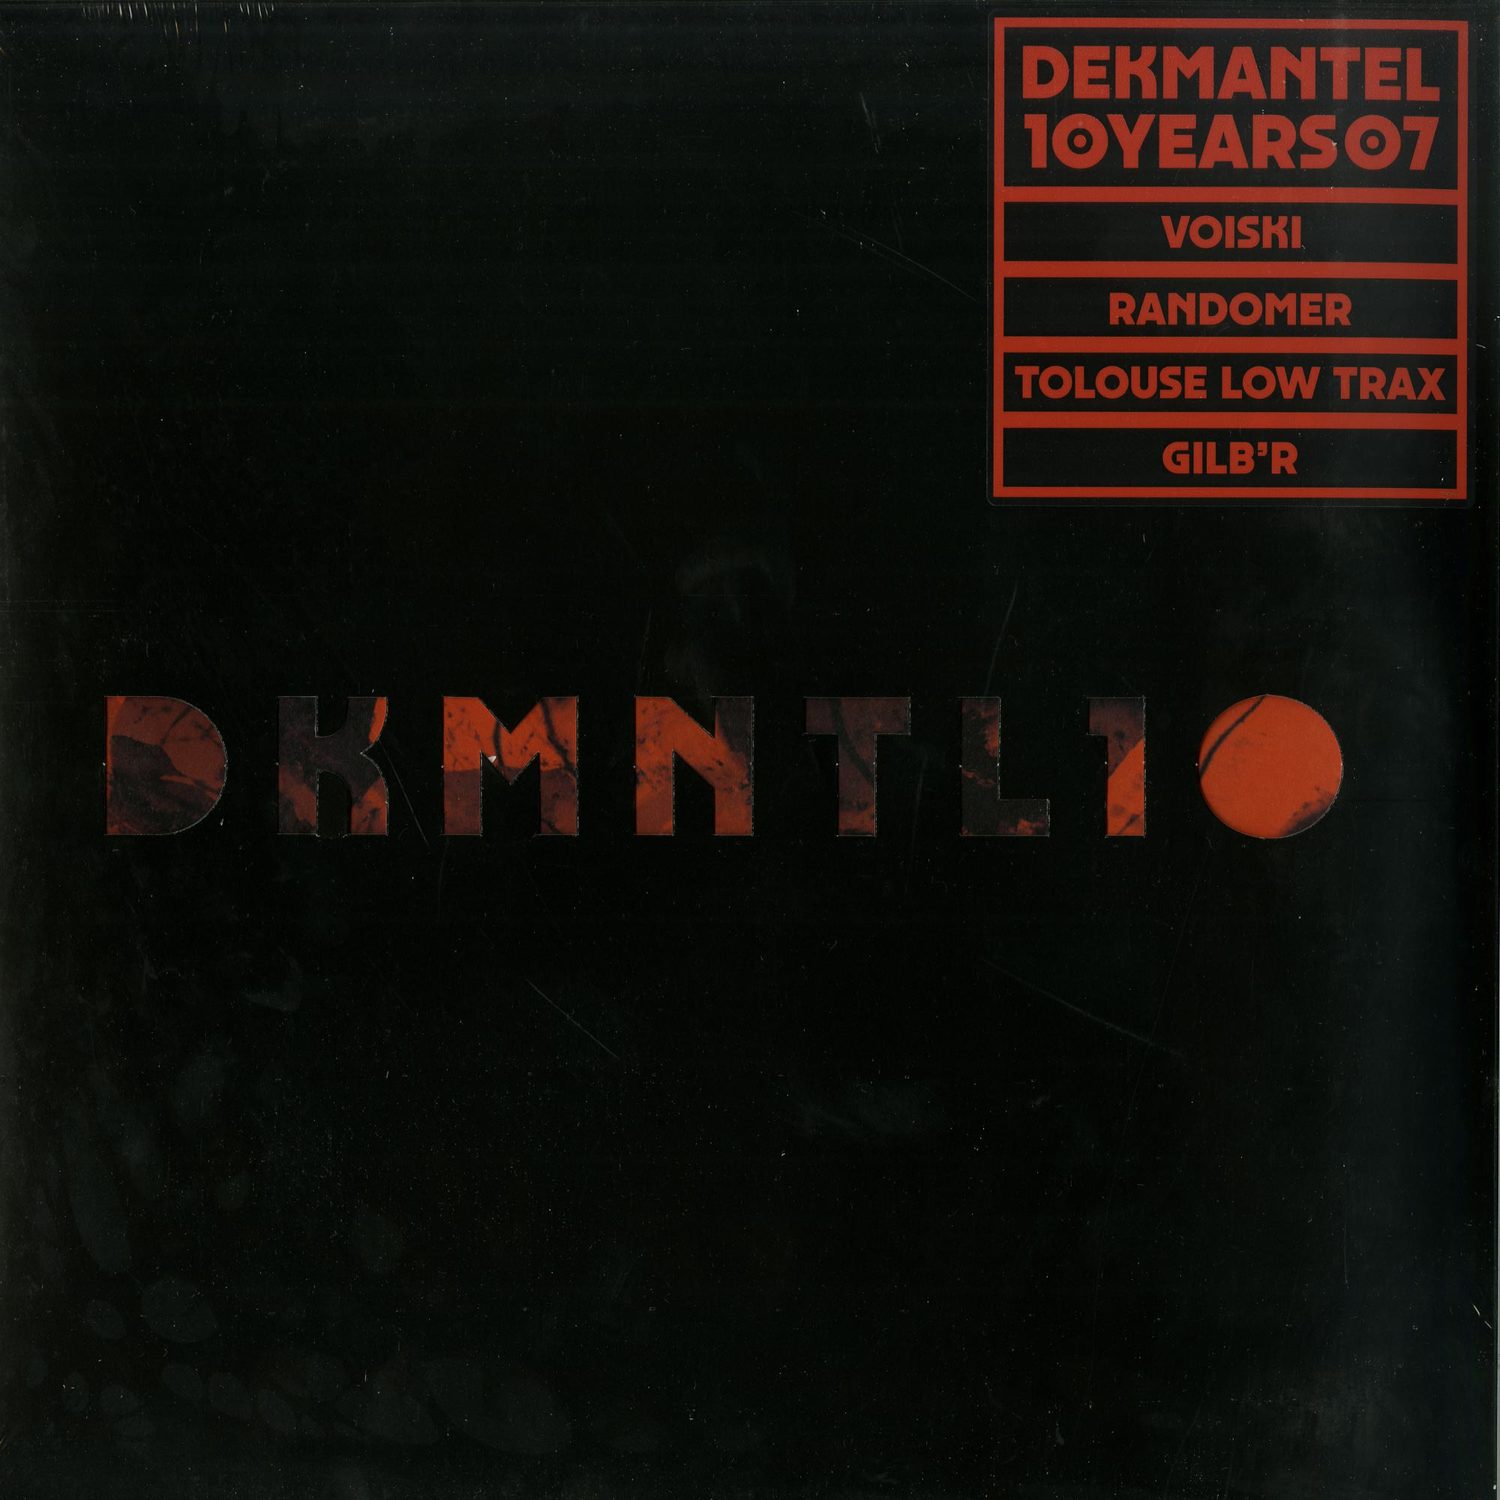 Various Artists - DEKMANTEL 10 YEARS 07